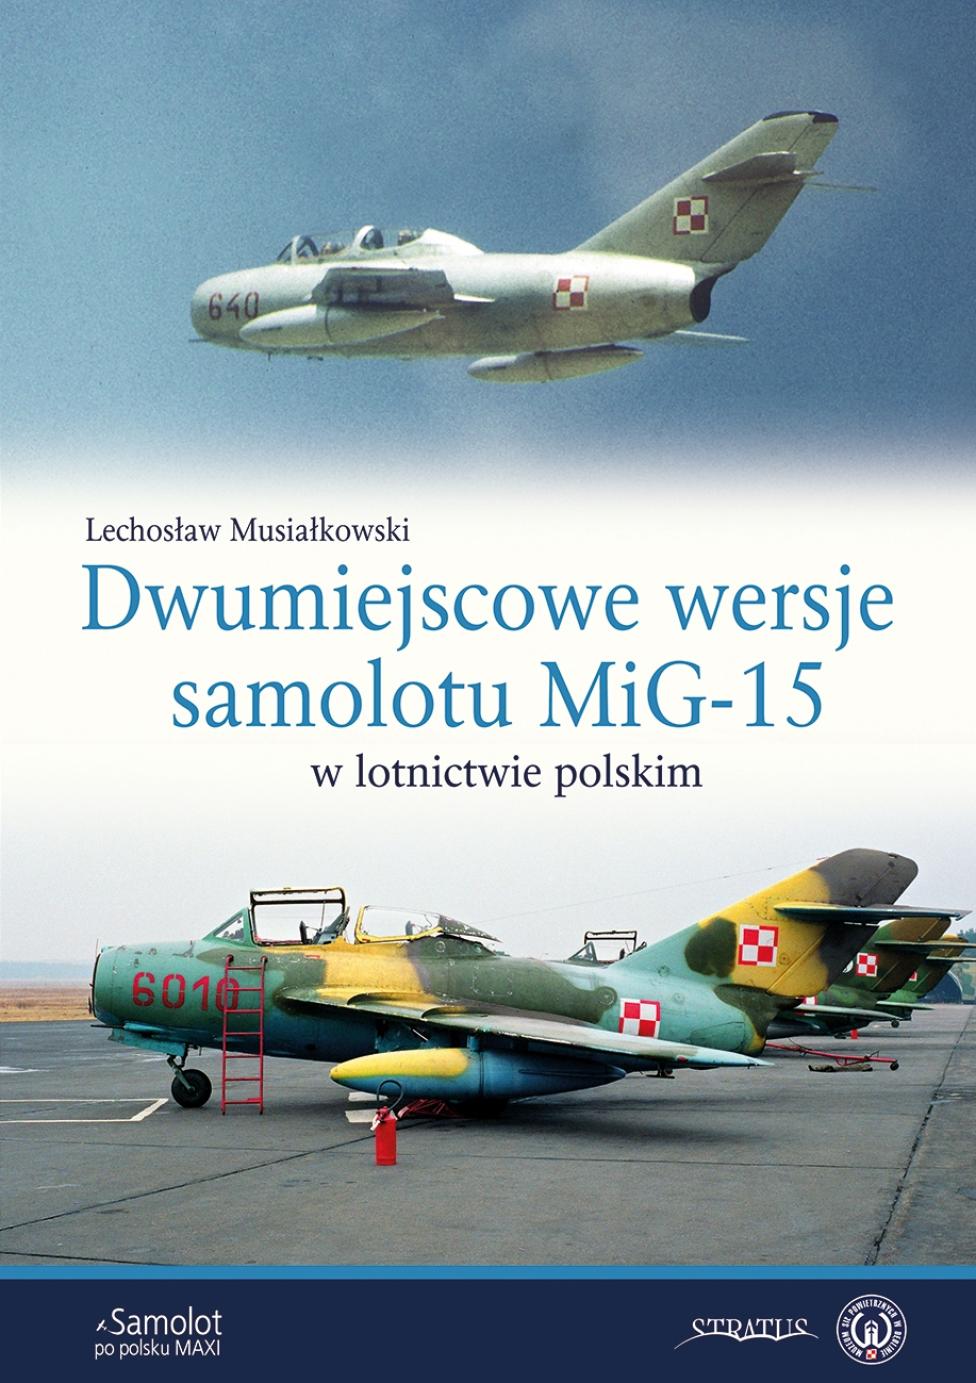 Książka "Dwumiejscowe wersje samolotu MiG-15 w lotnictwie polskim" (fot. Wydawnictwo Stratus)